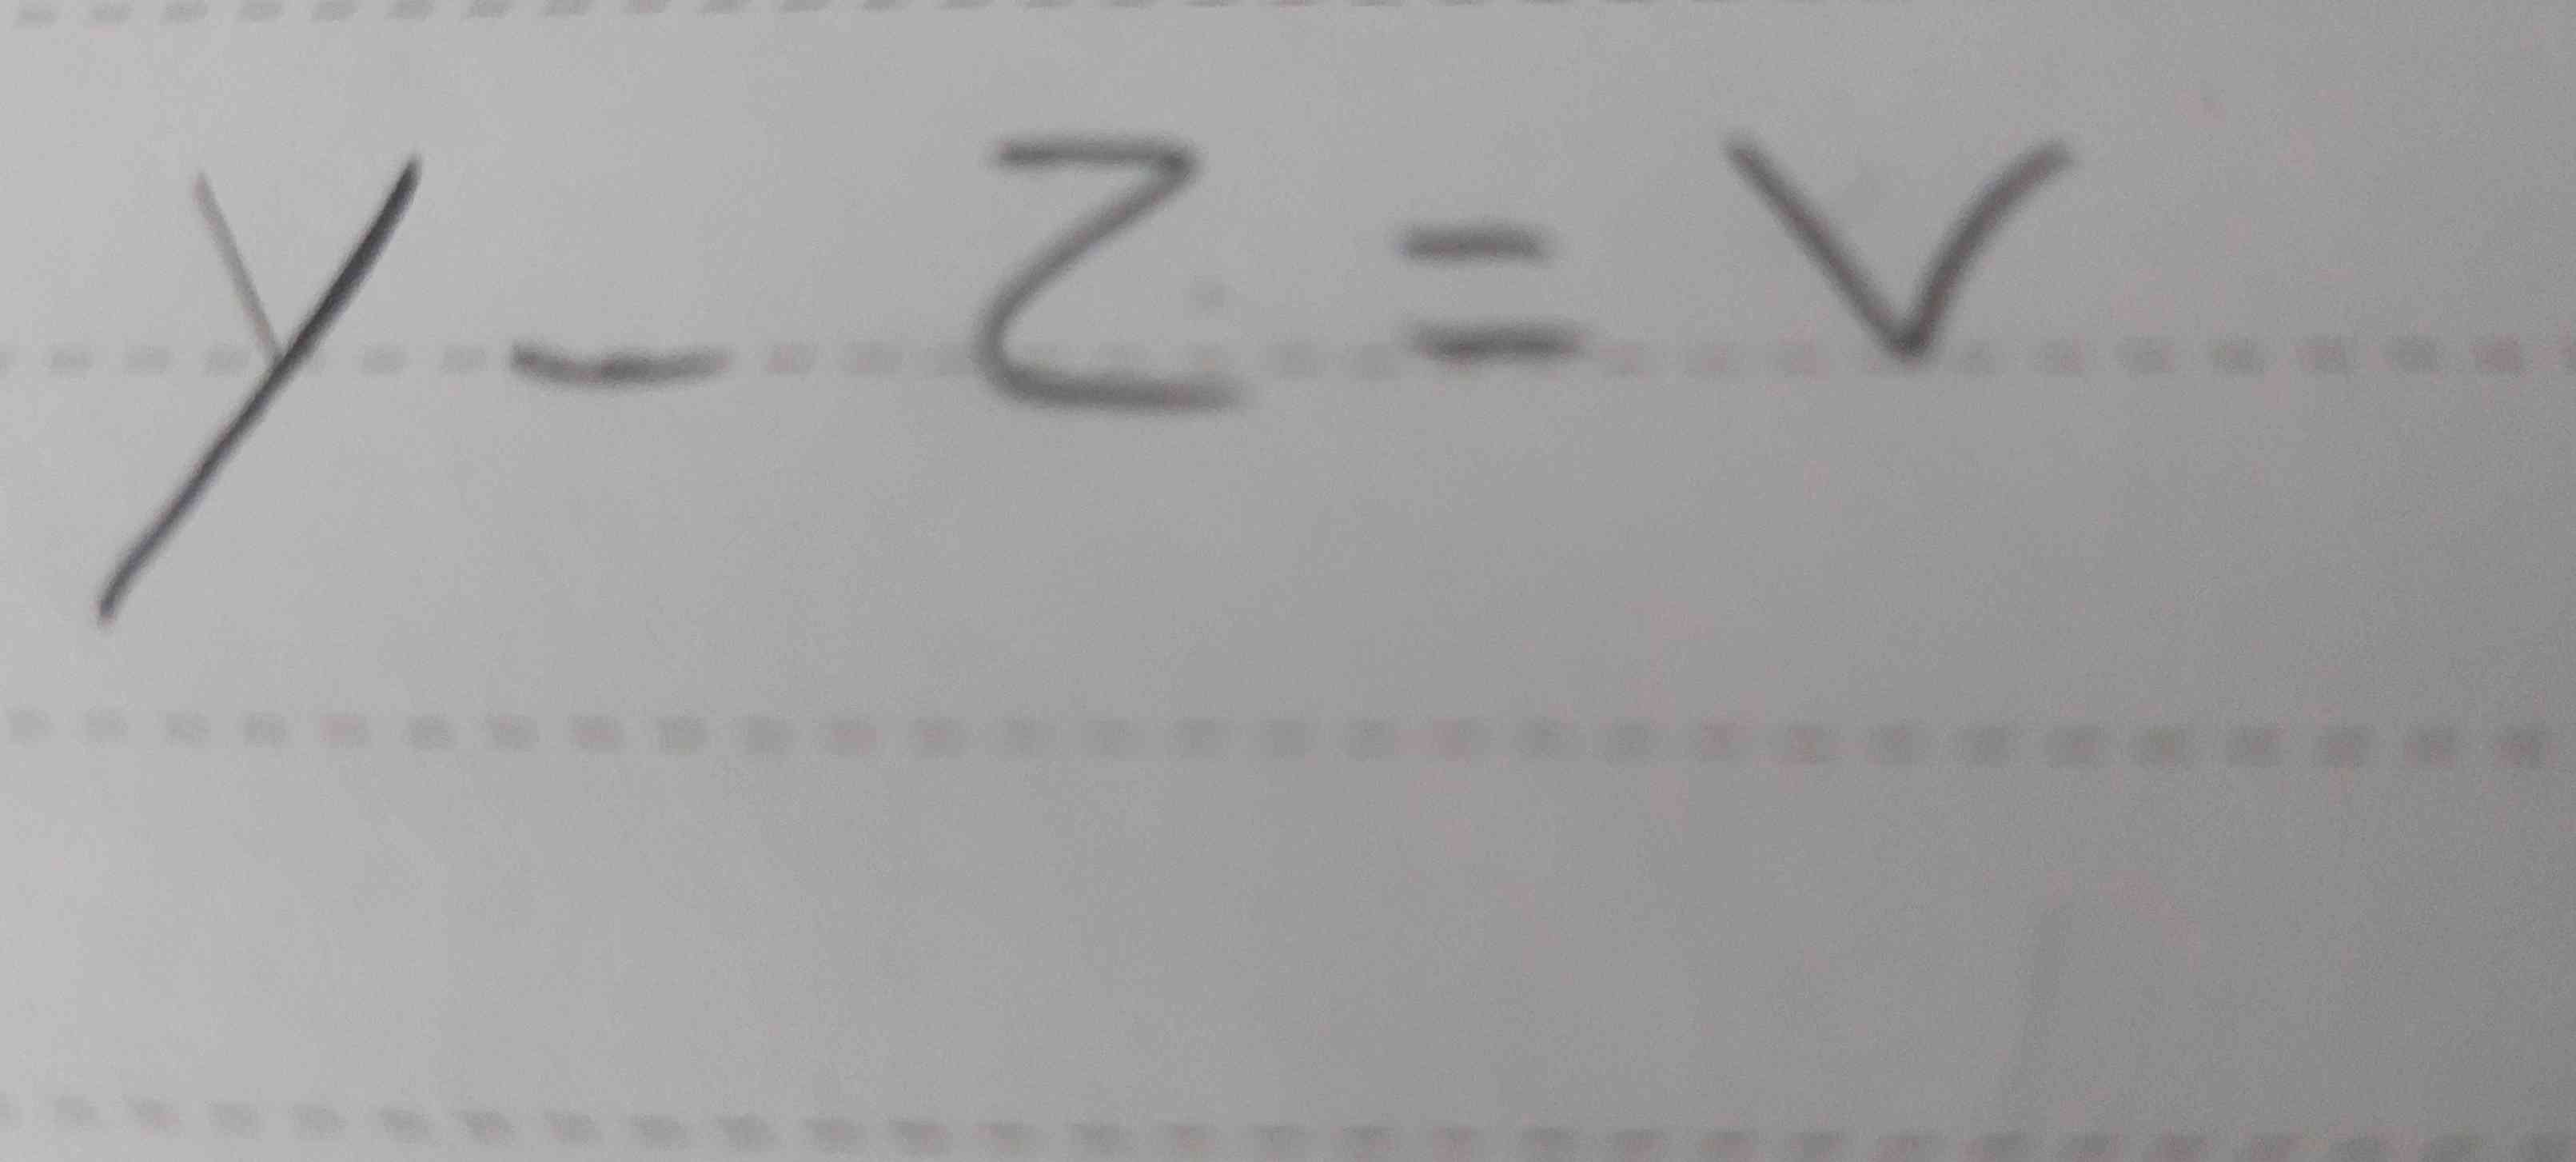 وقتی یه همچین معادله ای داریم چشکلی حلش میکنیم؟